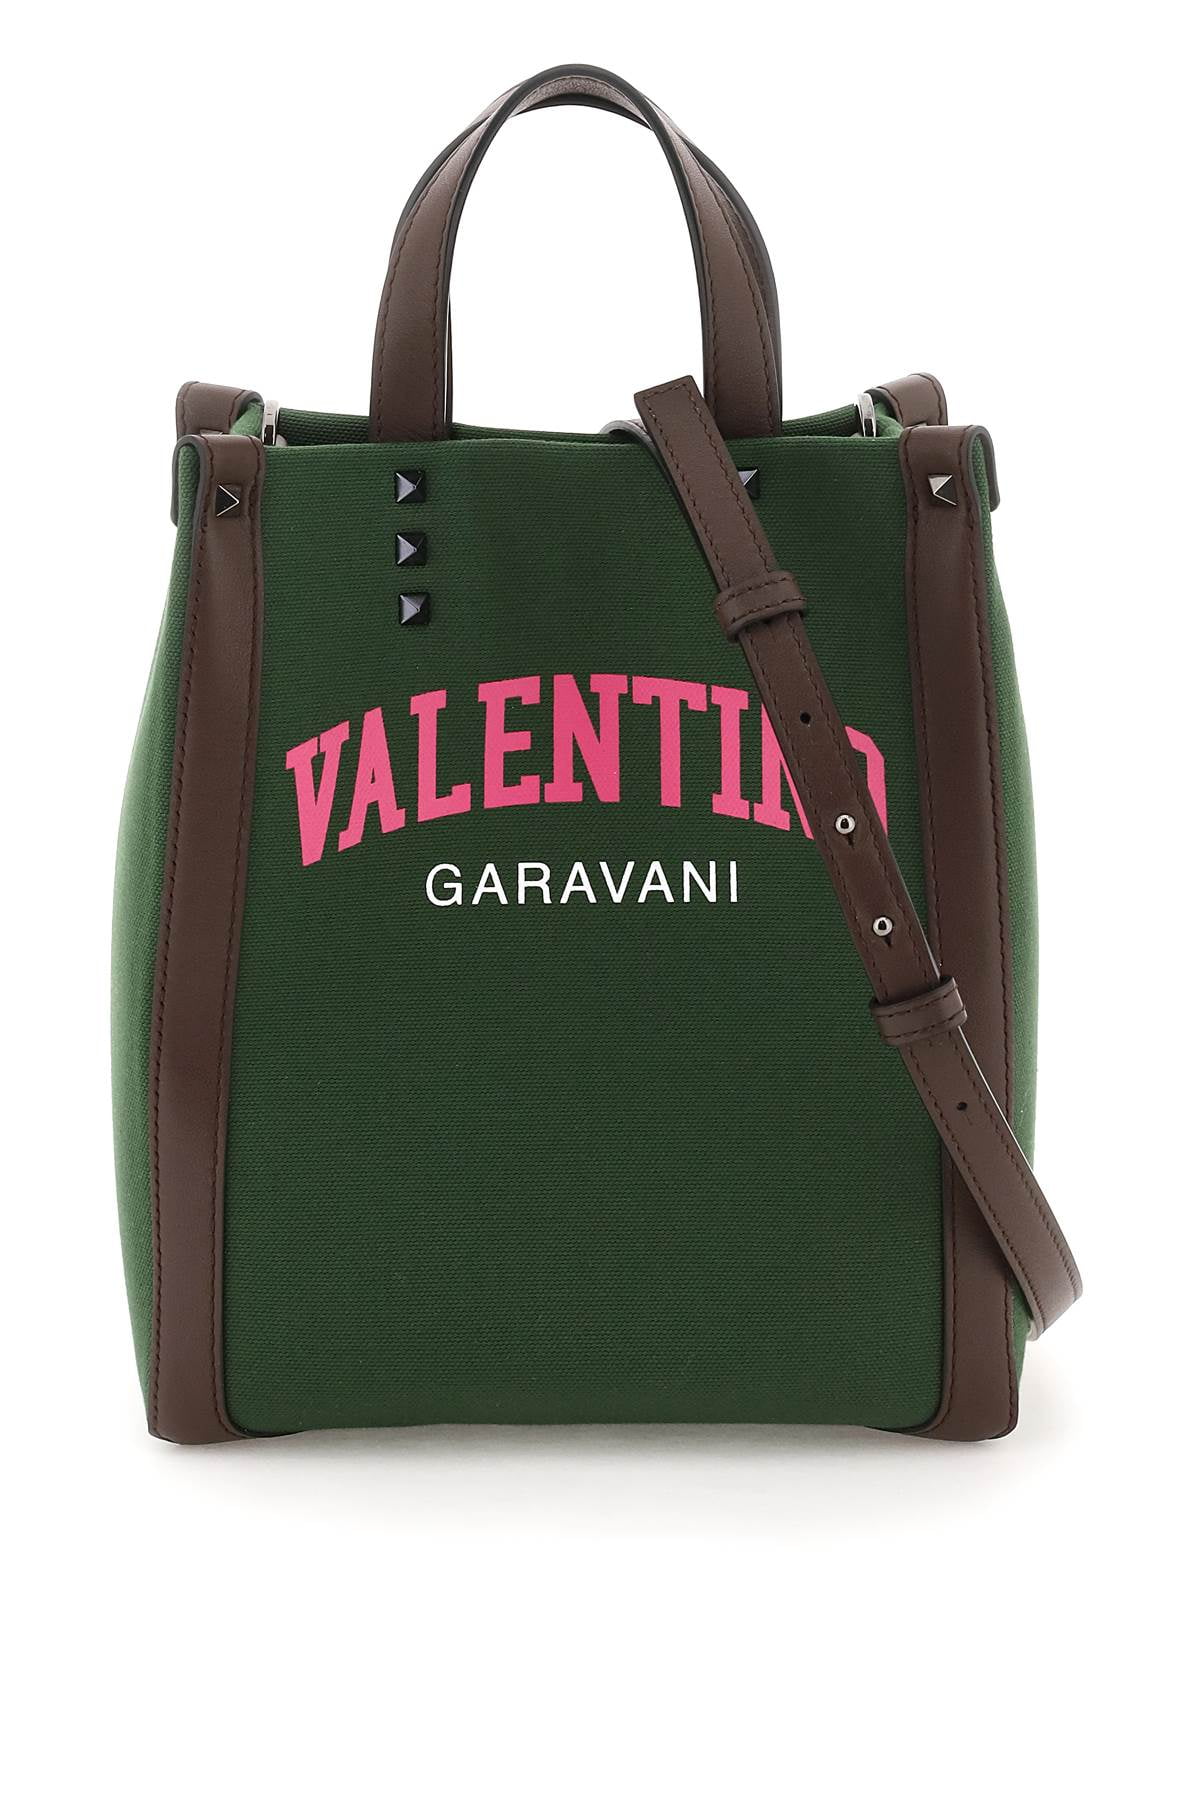 Valentino garavani - Walmart.com